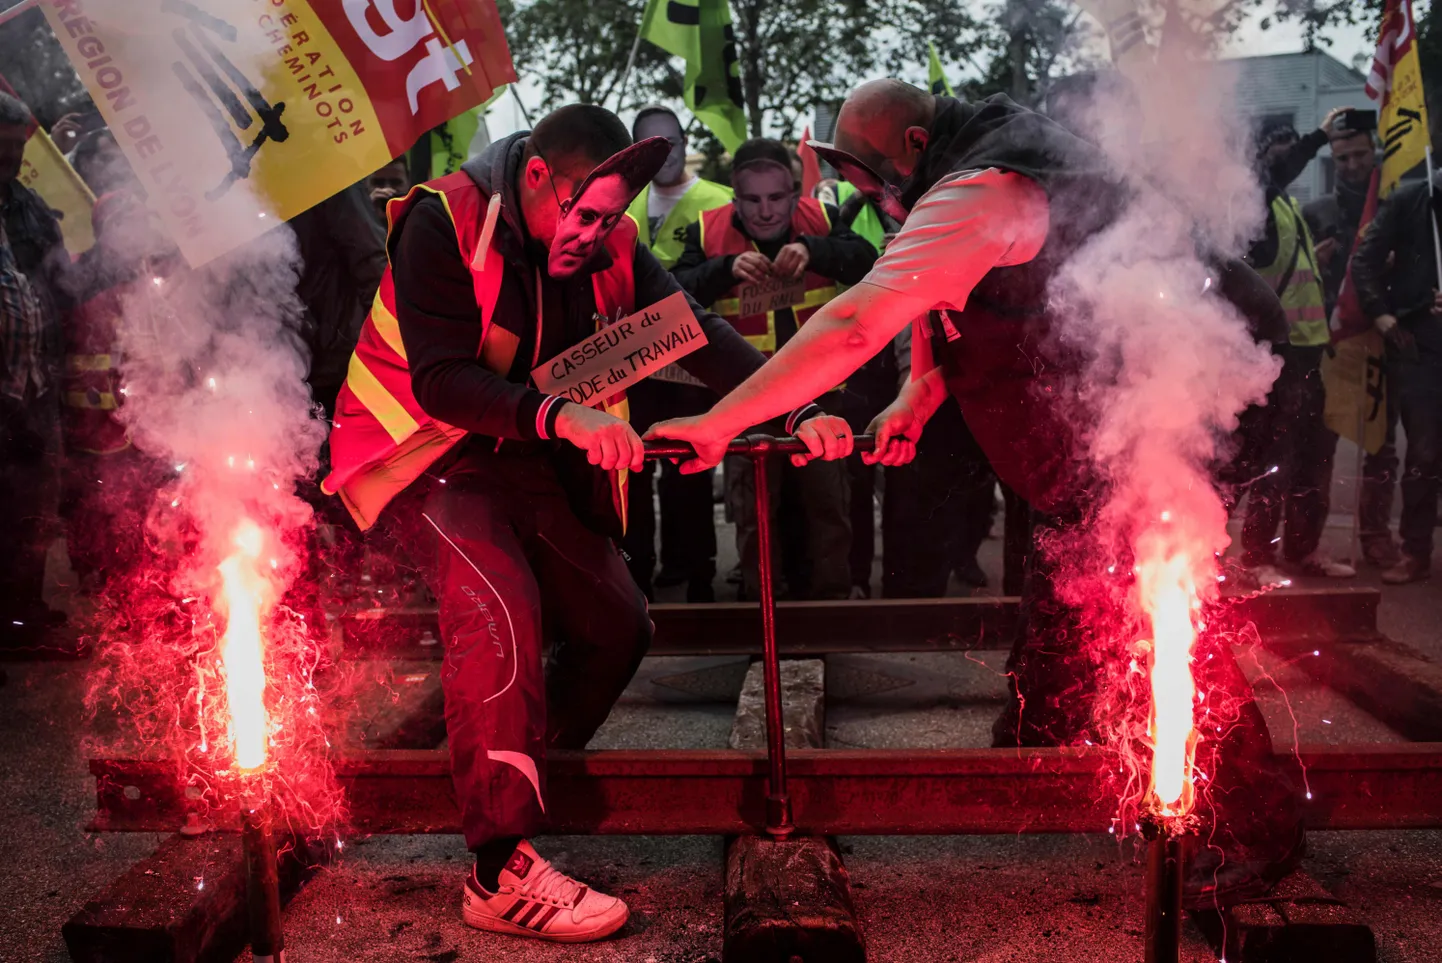 Streikivate raudteetöötajate meeleavaldus Lyonis. Üks protestijatest kannab peaminister Manuel Vallsi pildiga maski.